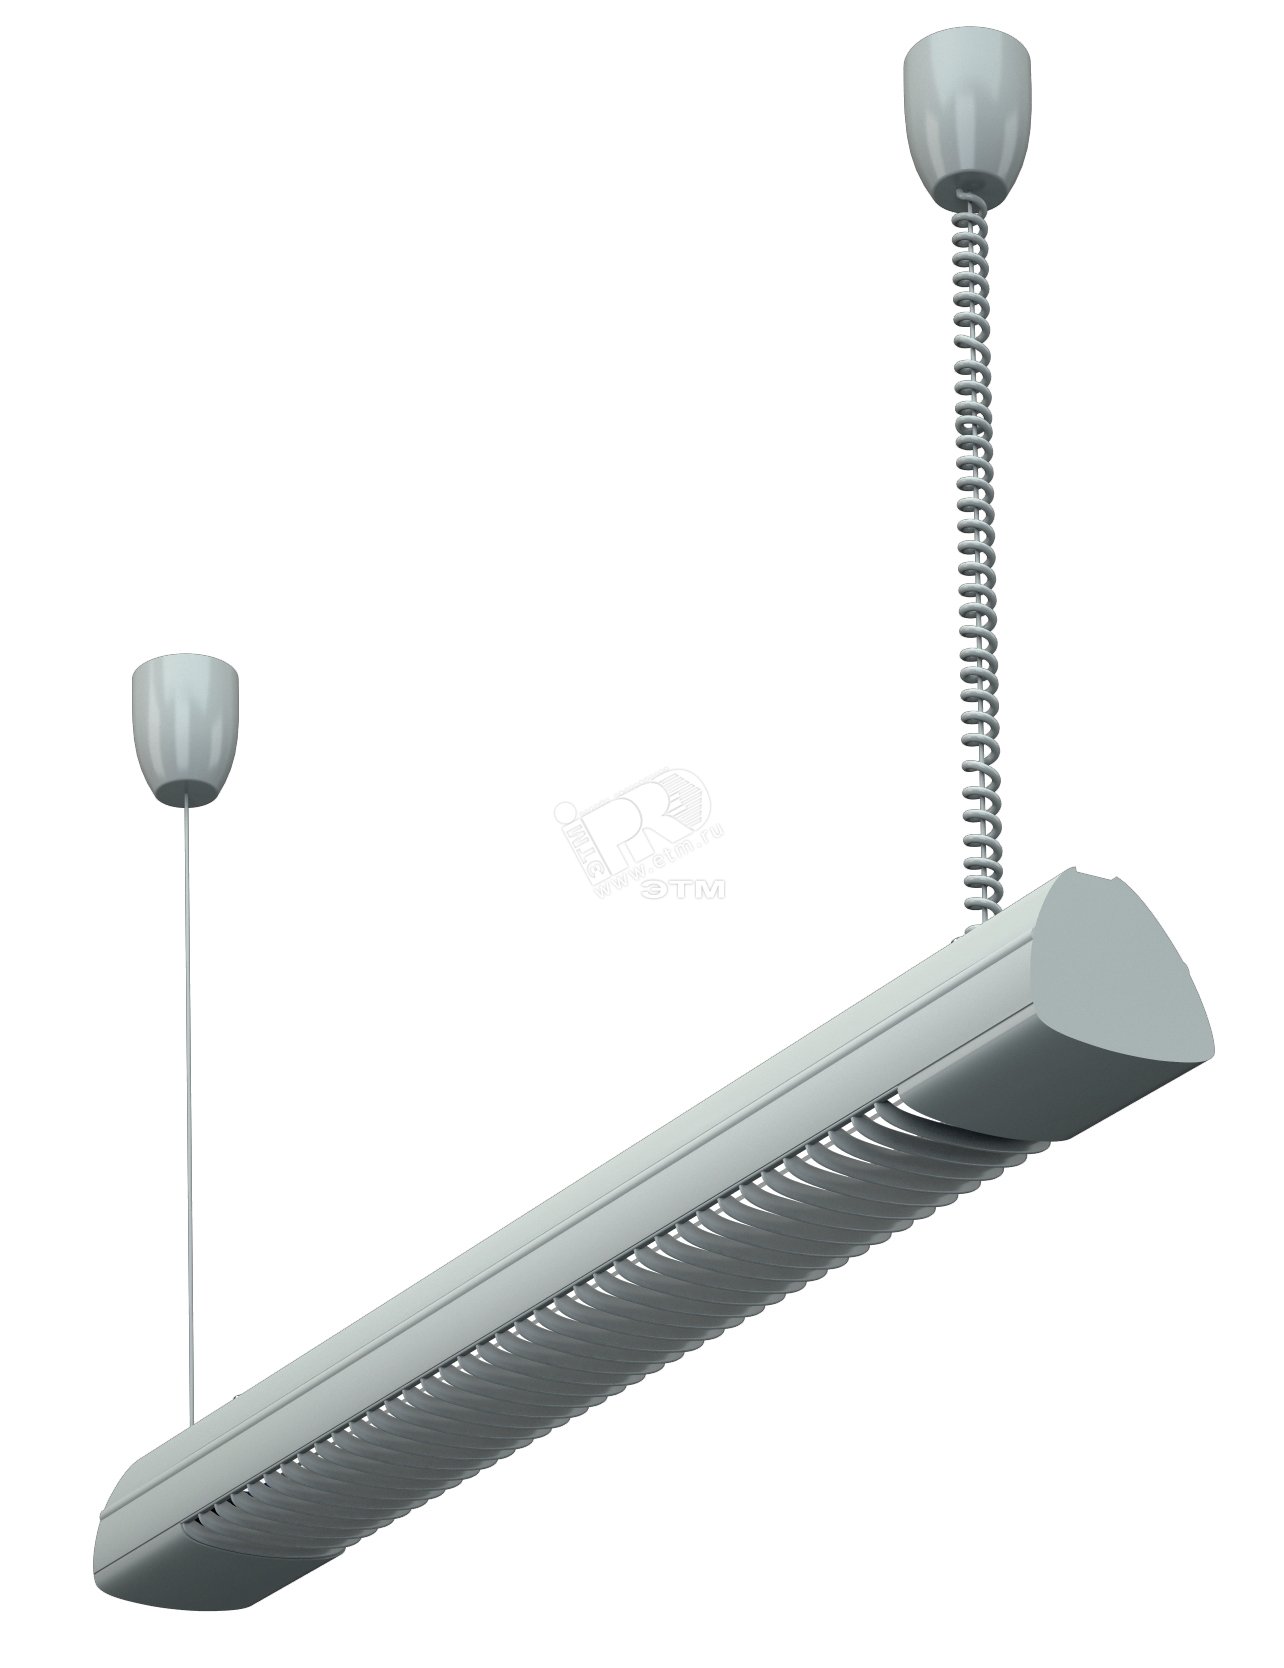 Светильник REGO 2x36 HF подвесной трапециевидный профиль ЭПРА металлик 1301000490 Световые Технологии